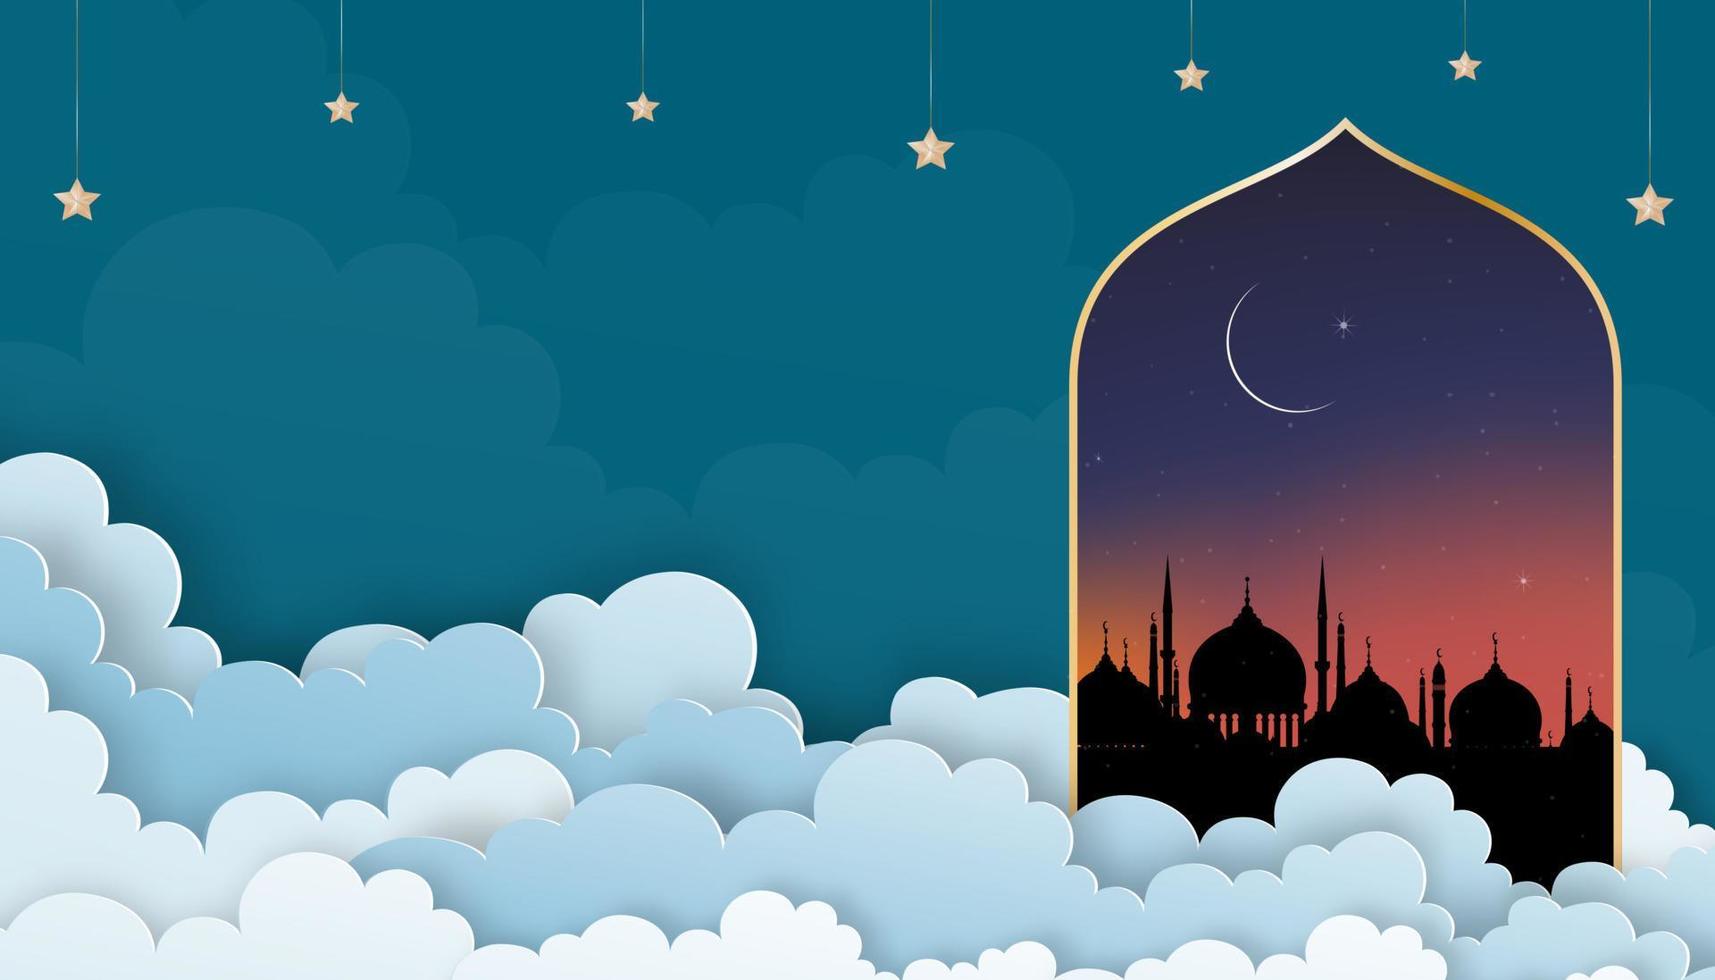 tarjeta islámica con mezquitas de cúpula de silueta, luna creciente, cielo naranja, capa de nubes vectoriales cortadas en papel 3d, pancarta de fondo del cielo para la religión islámica, eid al-adha, eid mubarak, eid al fitr, ramadan kareem vector